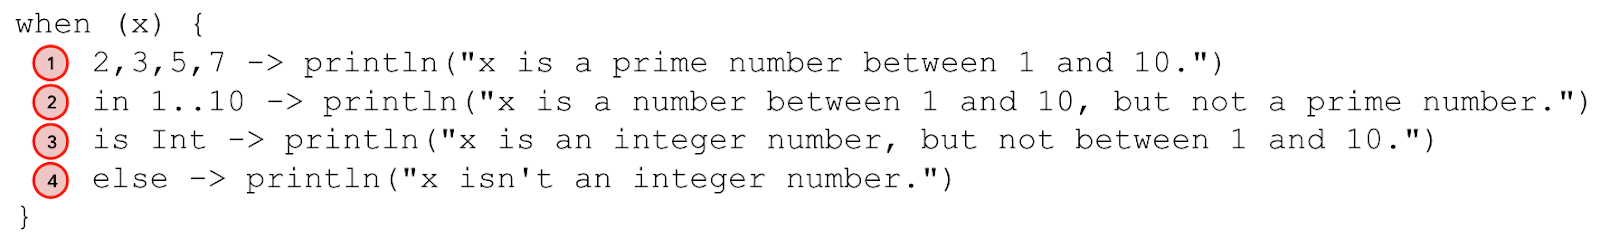 Um diagrama para anotar a instrução &quot;when&quot;. A linha 2,3,5,7 -> println(&quot;x is a prime number between 1 and 10.&quot;) é anotada como caso 1. A linha 1..10 -> println(&quot;x is a number between 1 and 10, but not a prime number.&quot;) é anotada como caso 2. A linha is Int -> println(&quot;x is an integer number, but not between 1 and 10.&quot;) é anotada como caso 3. A linha else -> println(&quot;x isn&#39;t an integer number.&quot;) é anotada como caso 4. 